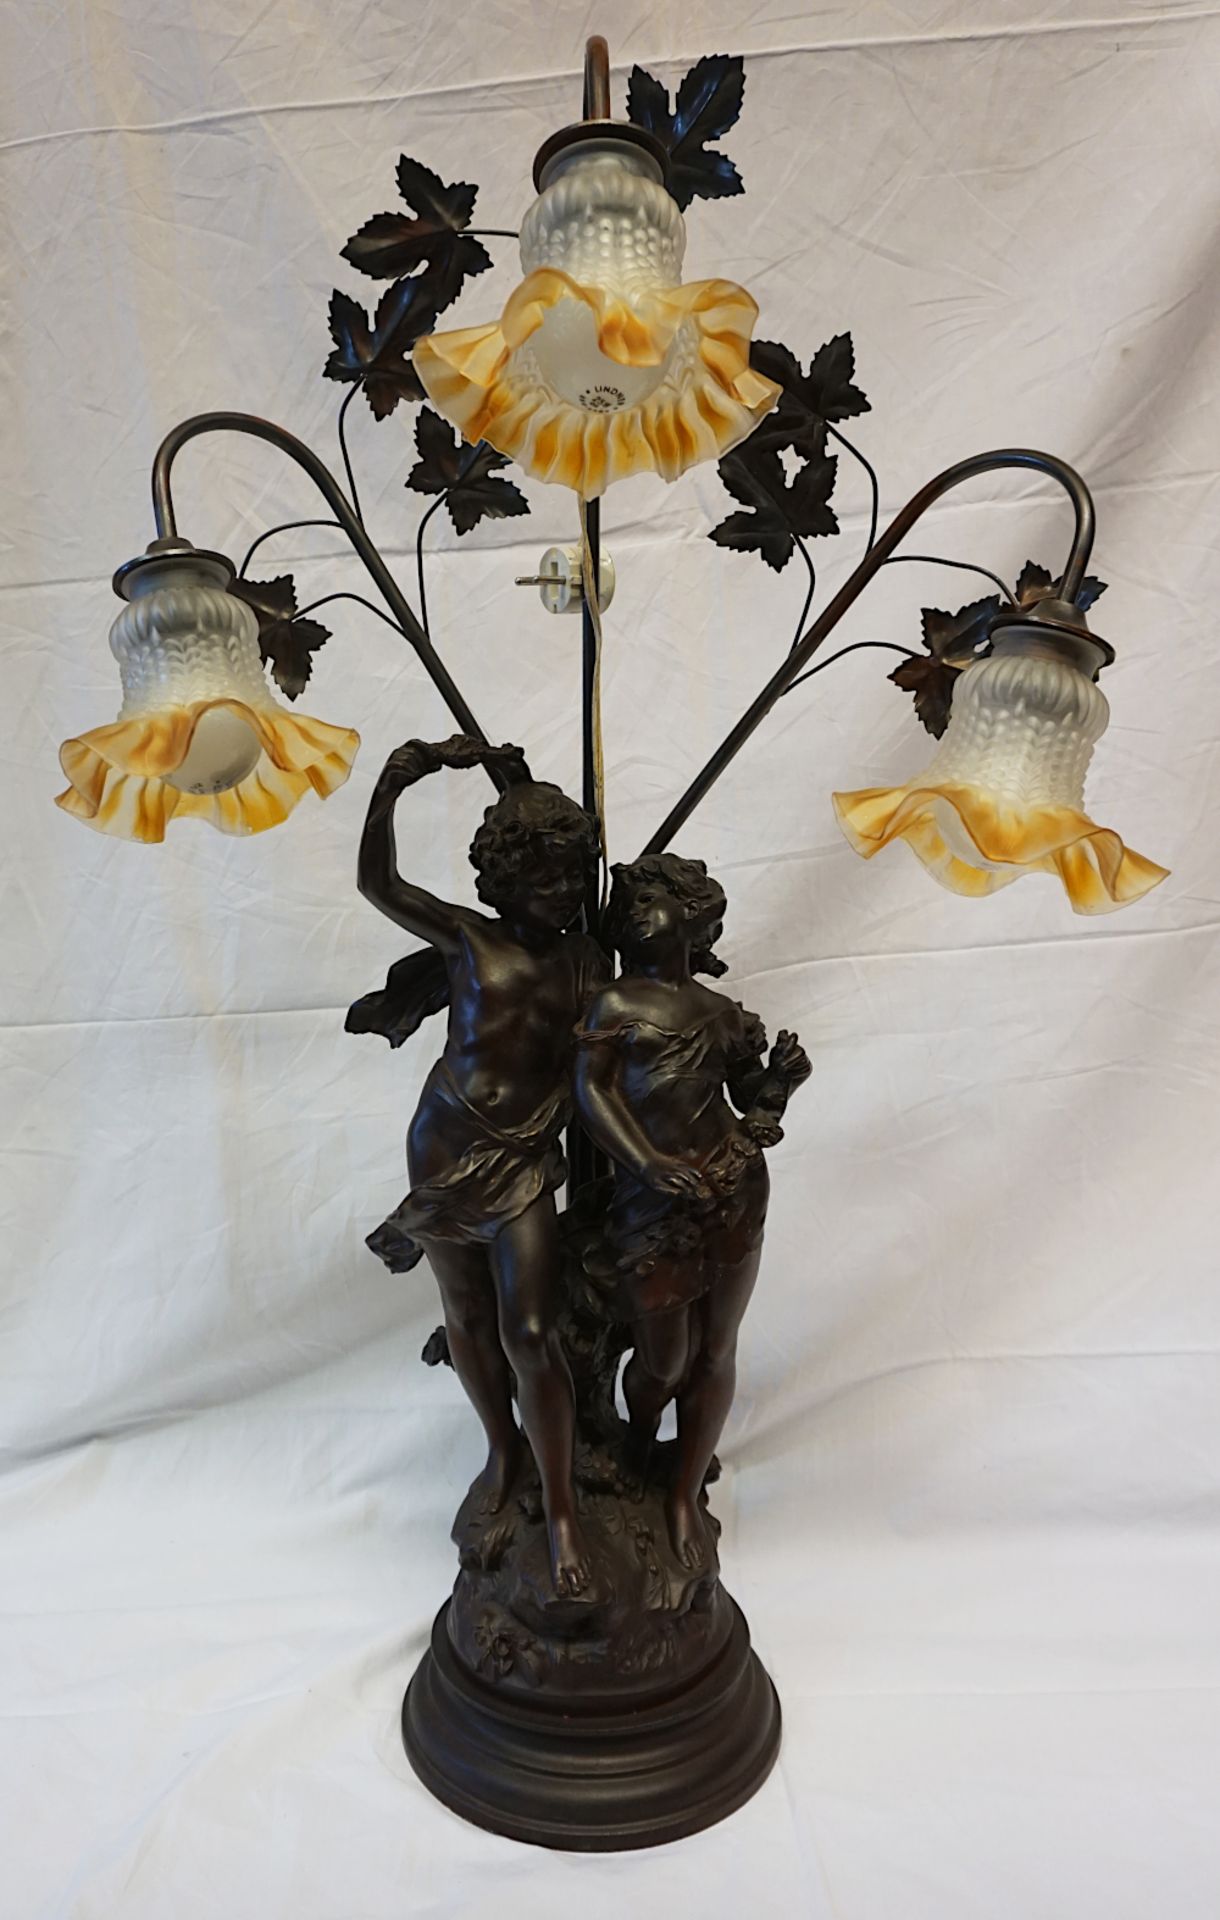 1 Tischlampe Metall Masse u.a. 3-flammigFuß bestehend aus Figurengruppe "Blumenkinder